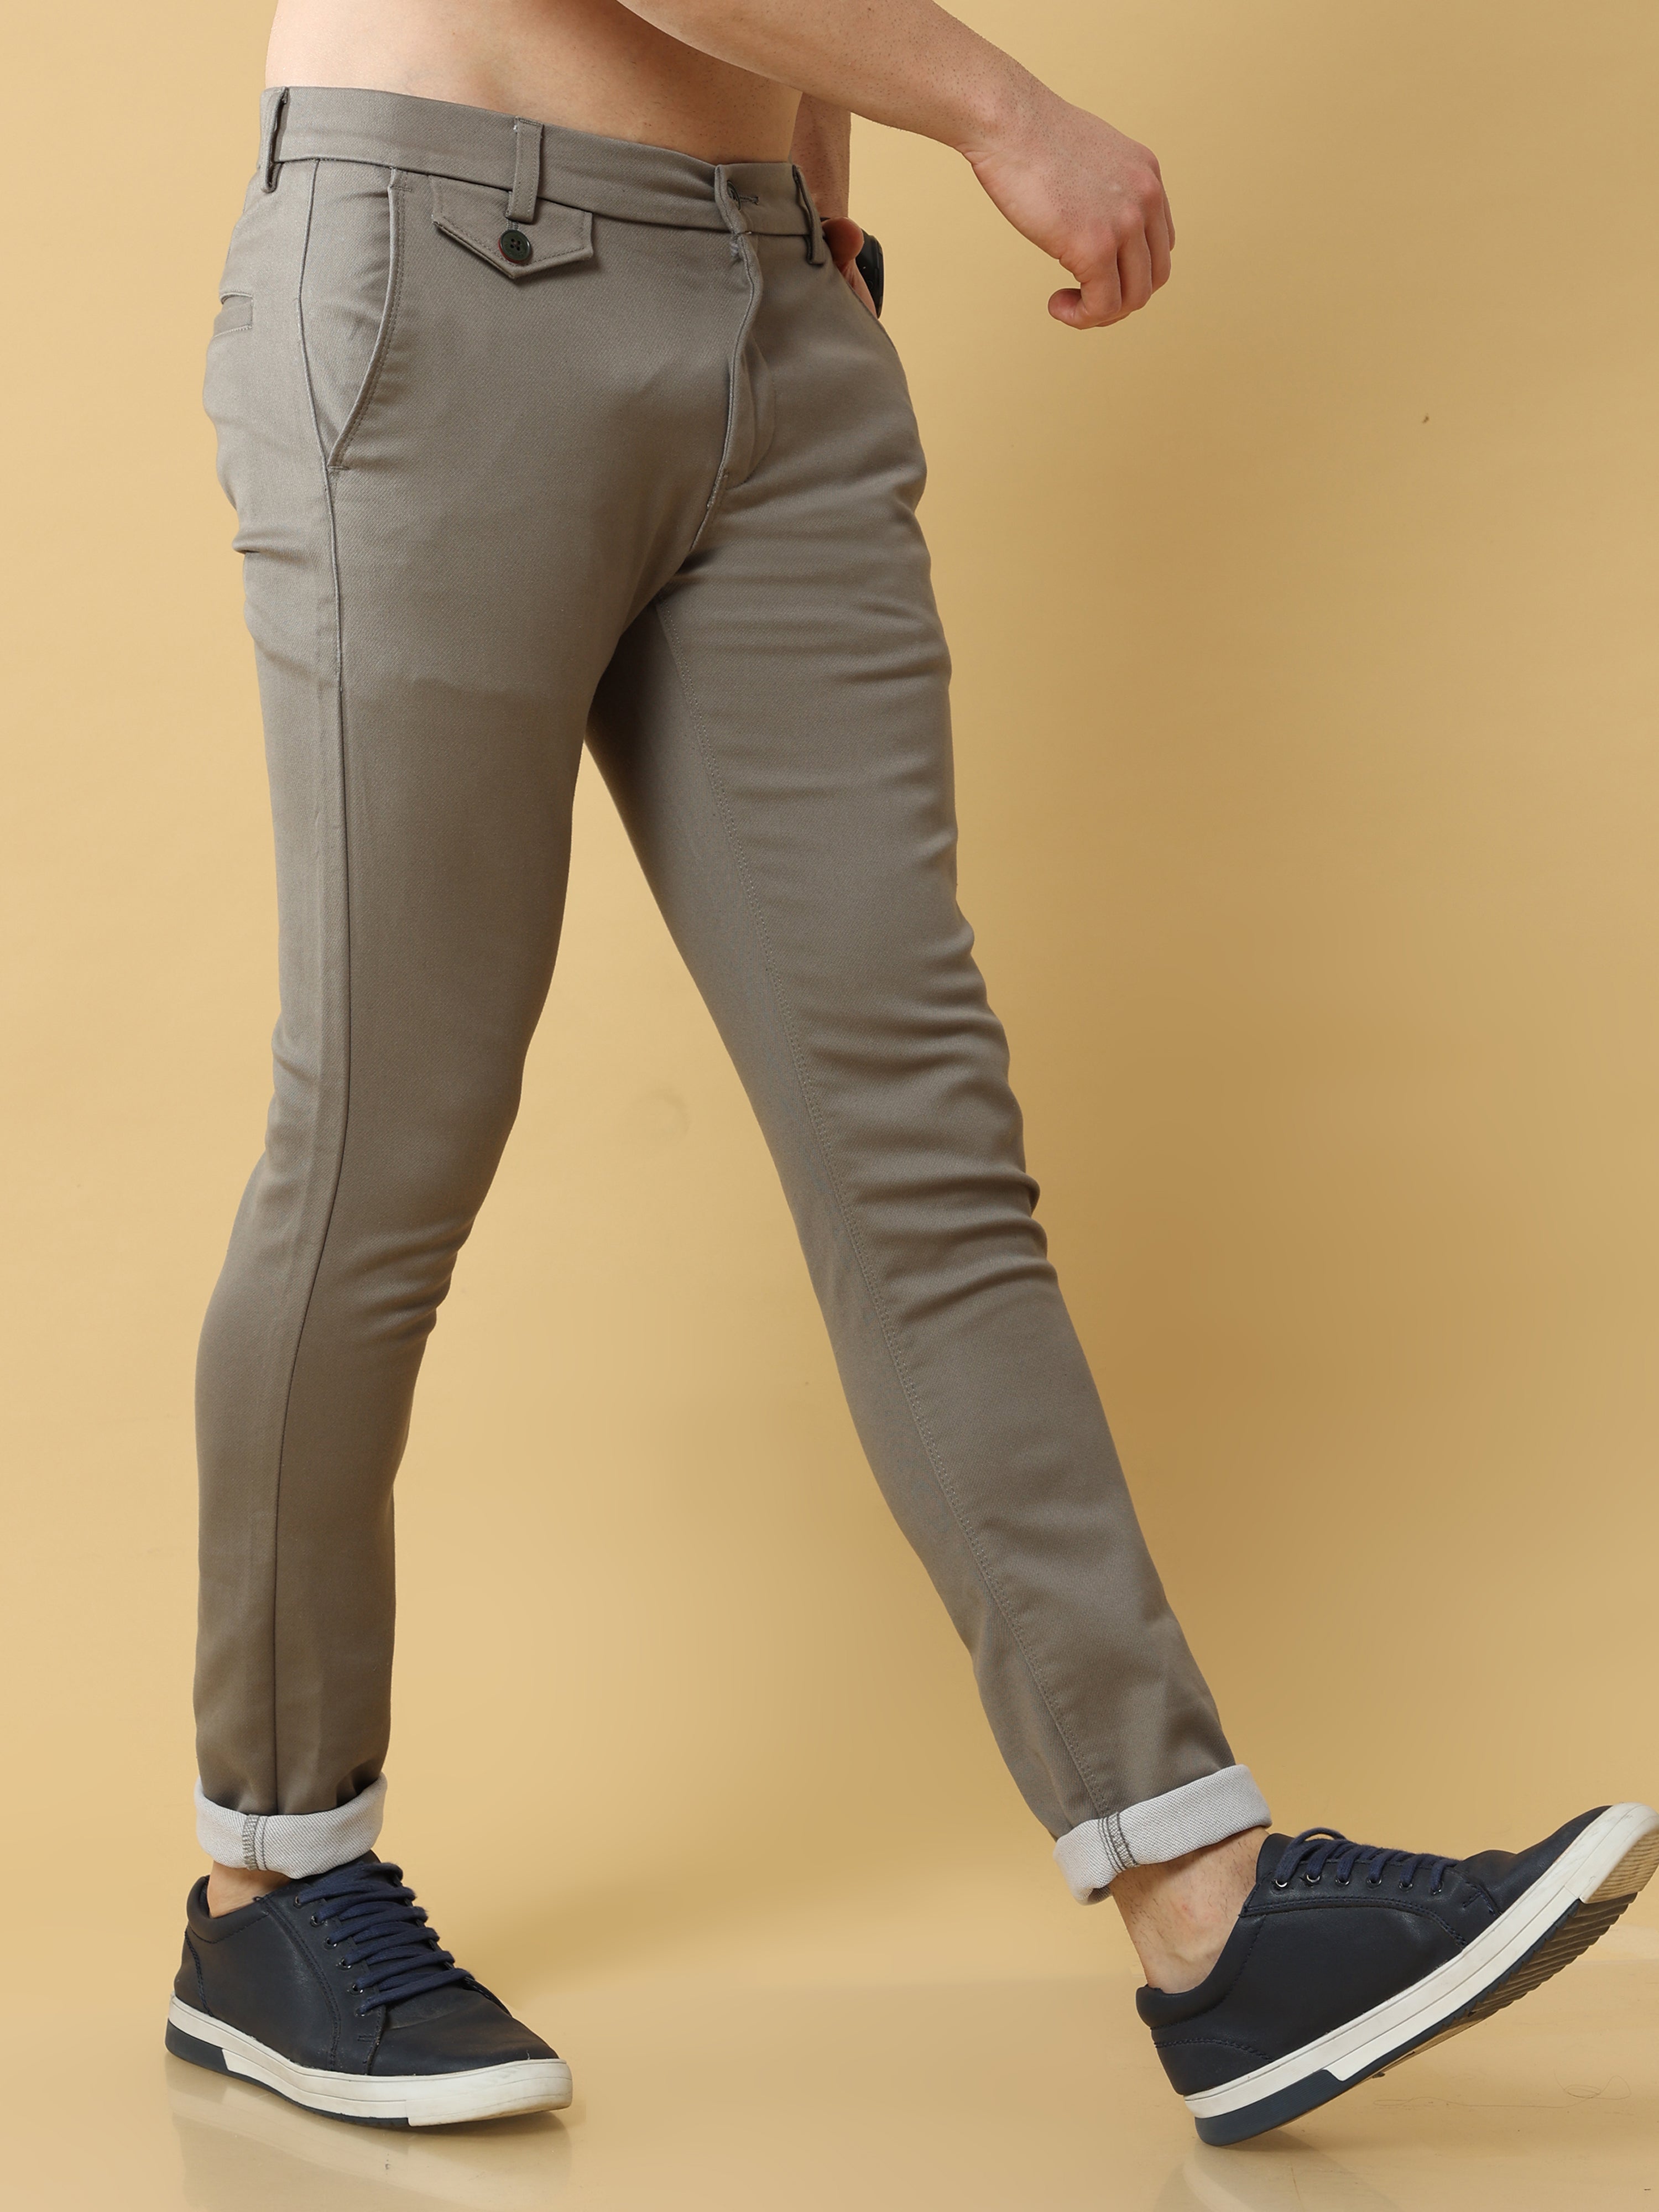 Cotton Trousers - Buy Latest Cotton Trousers Men Online